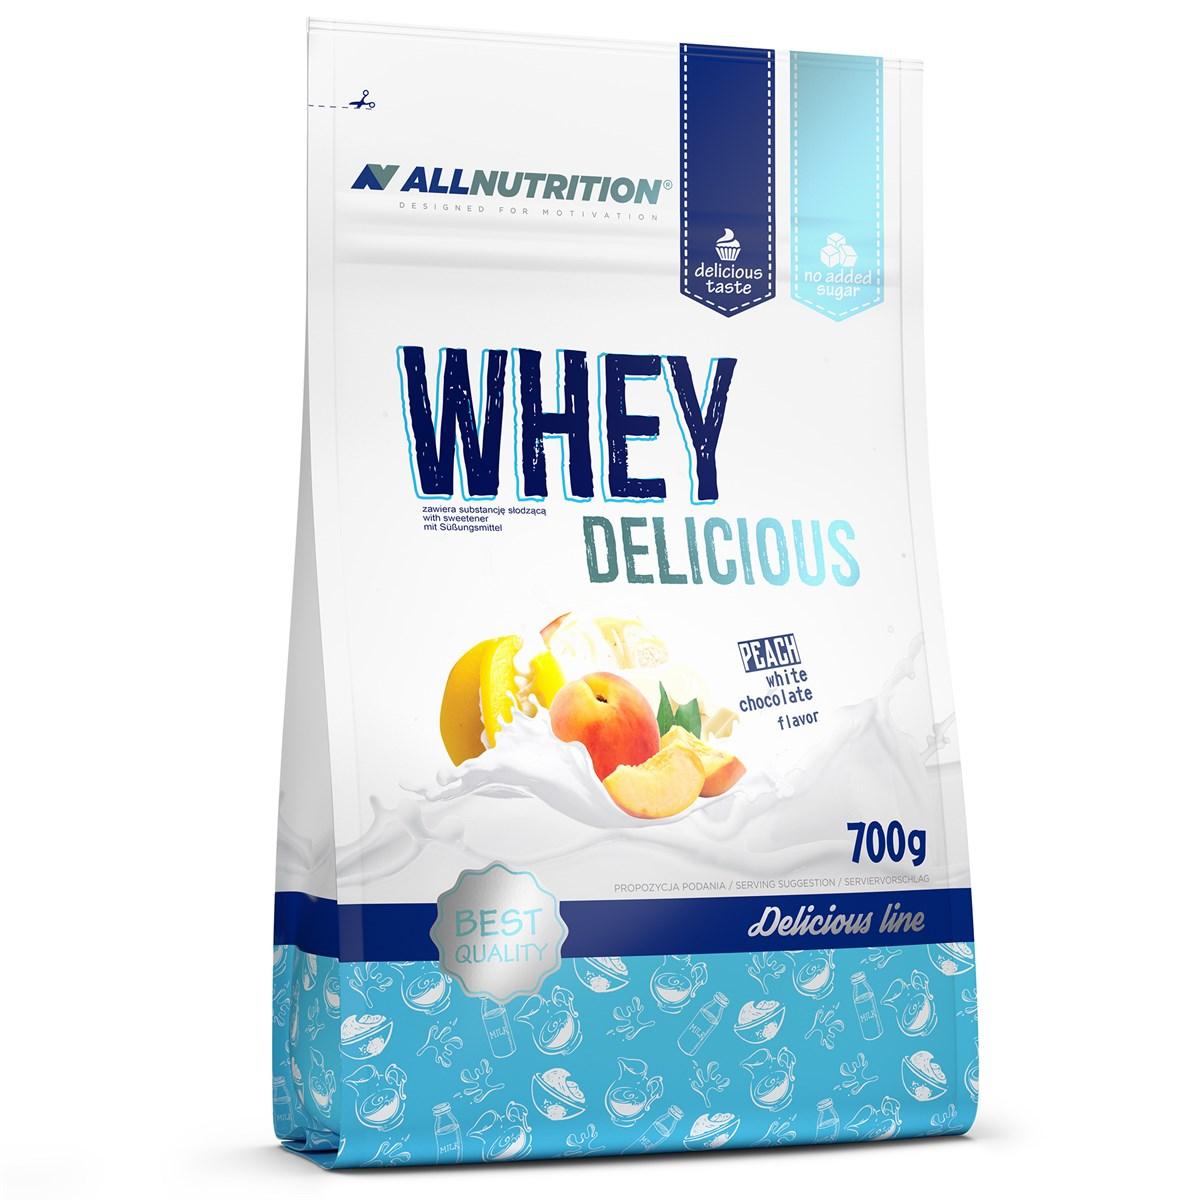 Сывороточный протеин концентрат AllNutrition Whey Delicious (700 г) алл нутришн вей White Chocolate with Peach,  мл, AllNutrition. Сывороточный концентрат. Набор массы Восстановление Антикатаболические свойства 